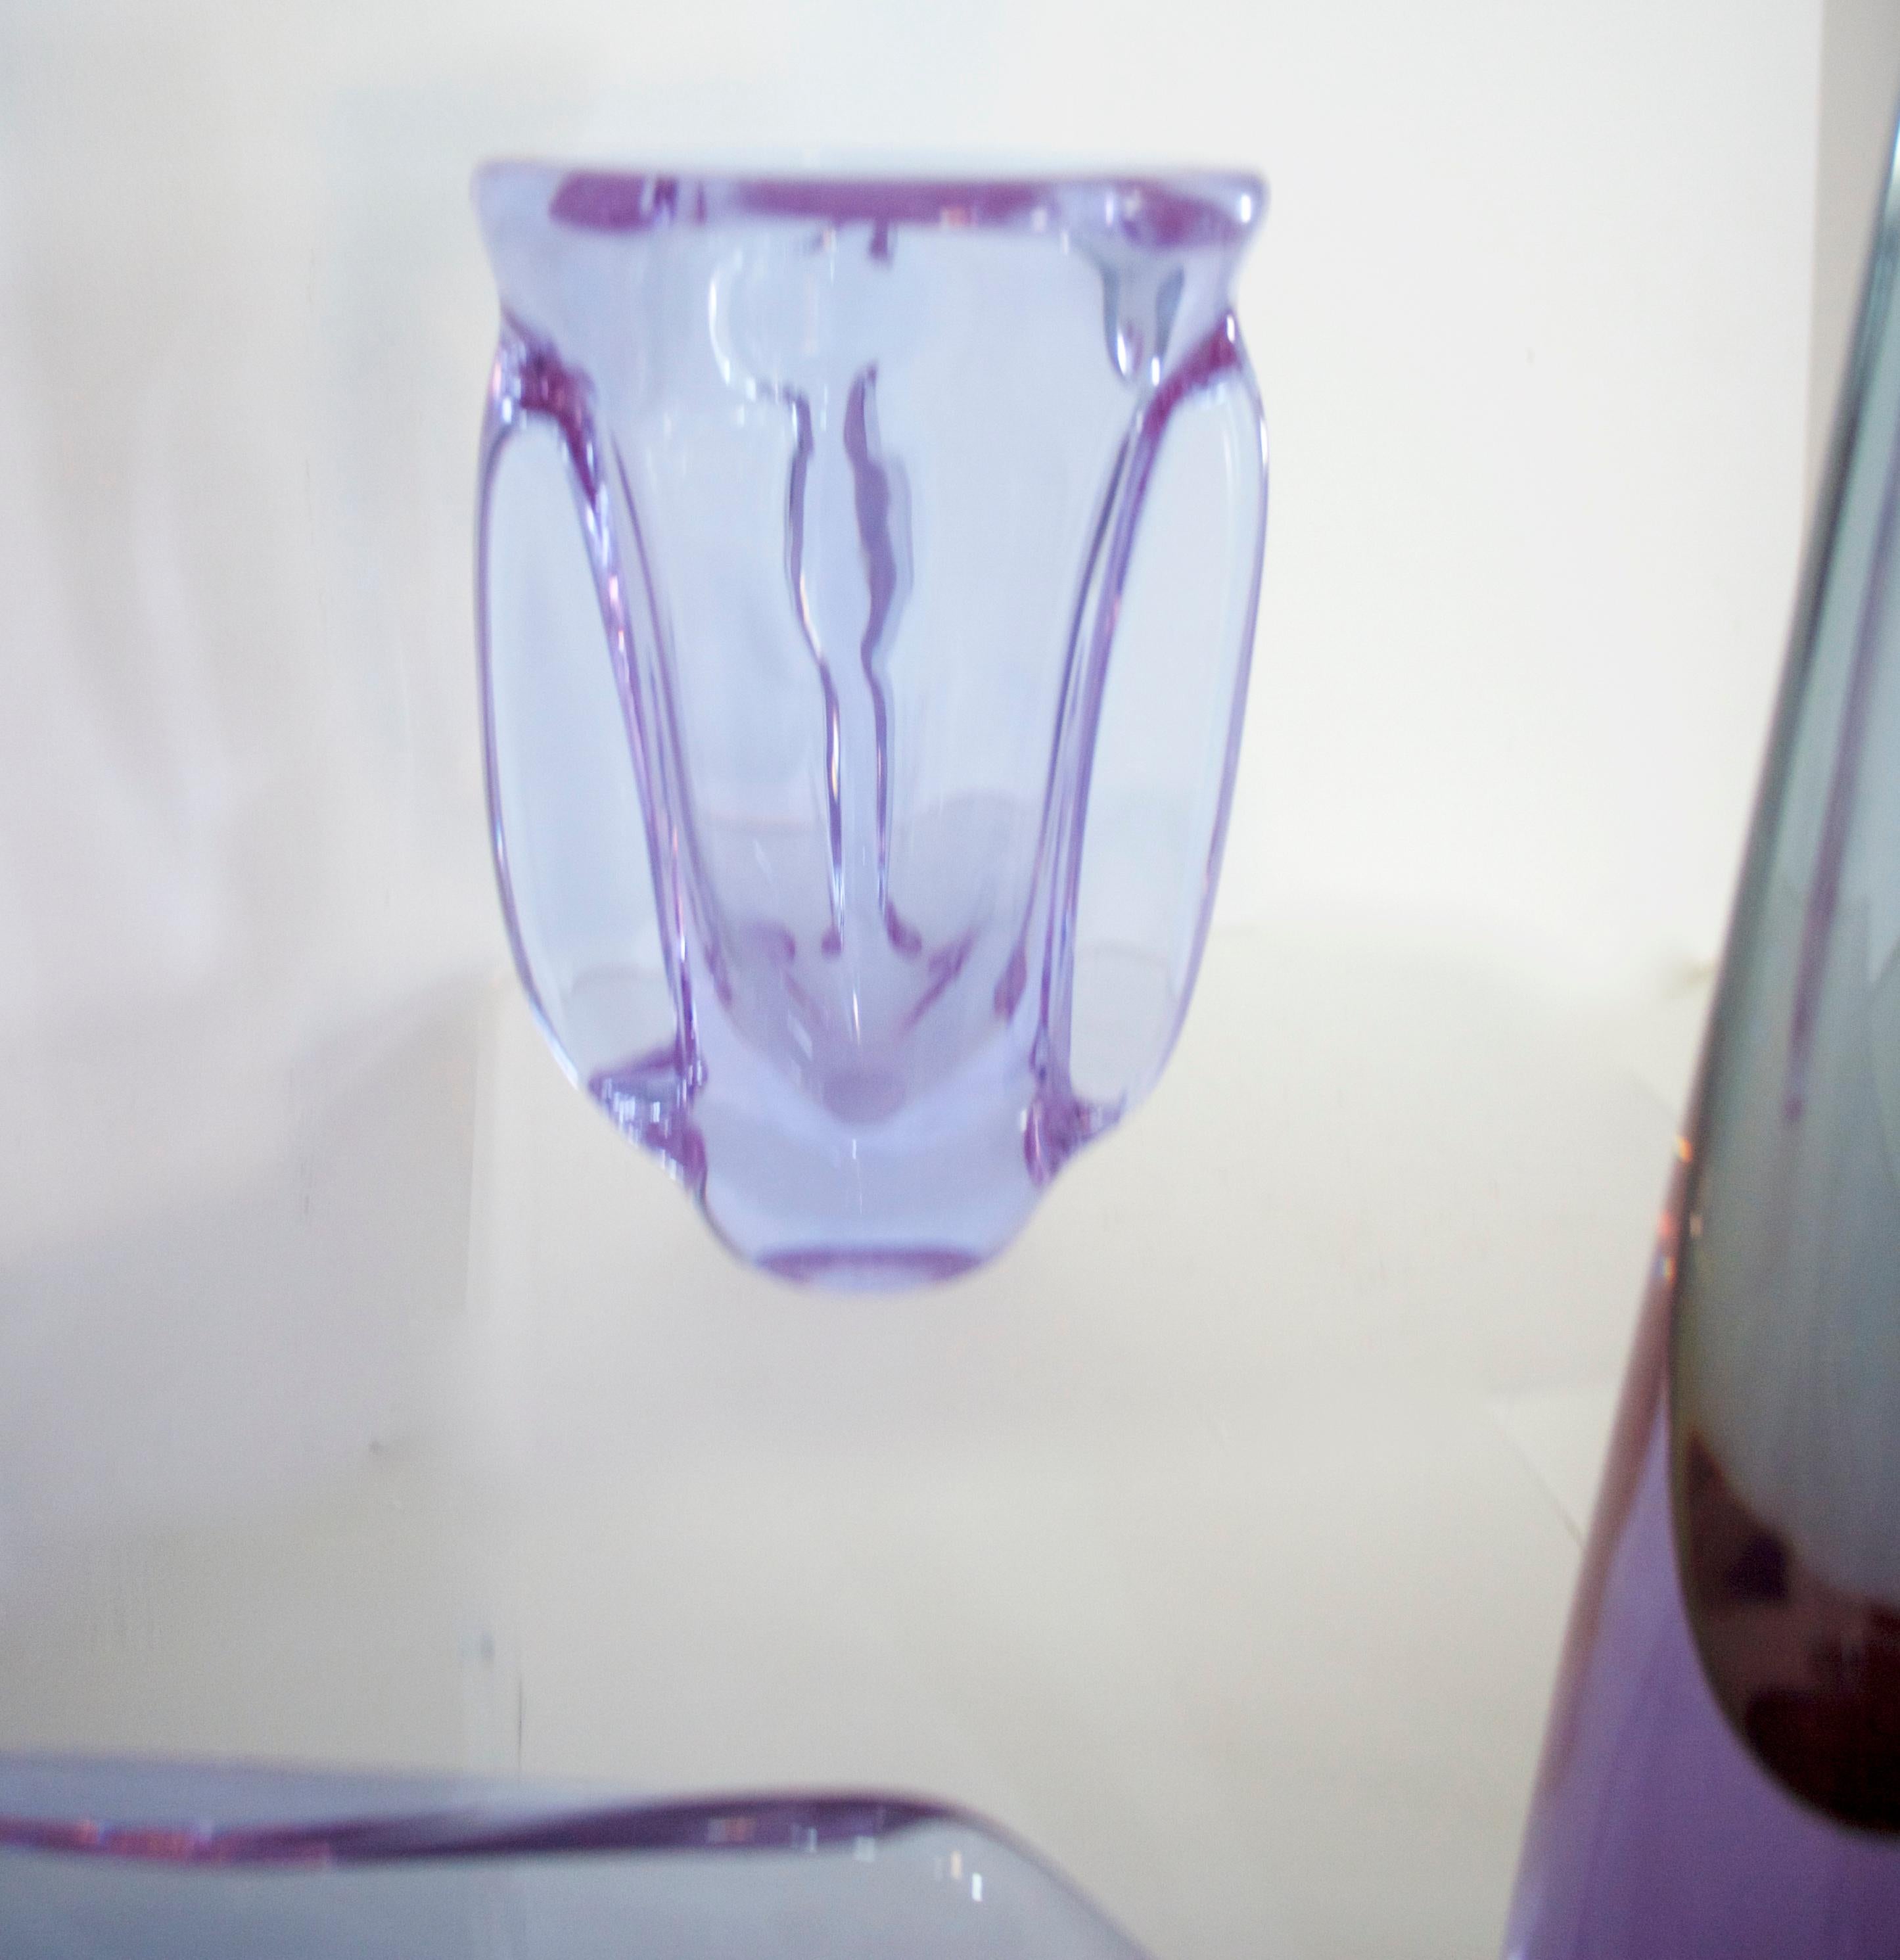 Collection 1950 - Murano Livio Seguso cristal De Sèvres Alexandrite France composée de 3 pièces des maîtres du cristal.

Livio Seguso est né à Murano en 1930. Sculpteur sur verre, il a commencé très tôt dans la verrerie comme élève d'Alfredo